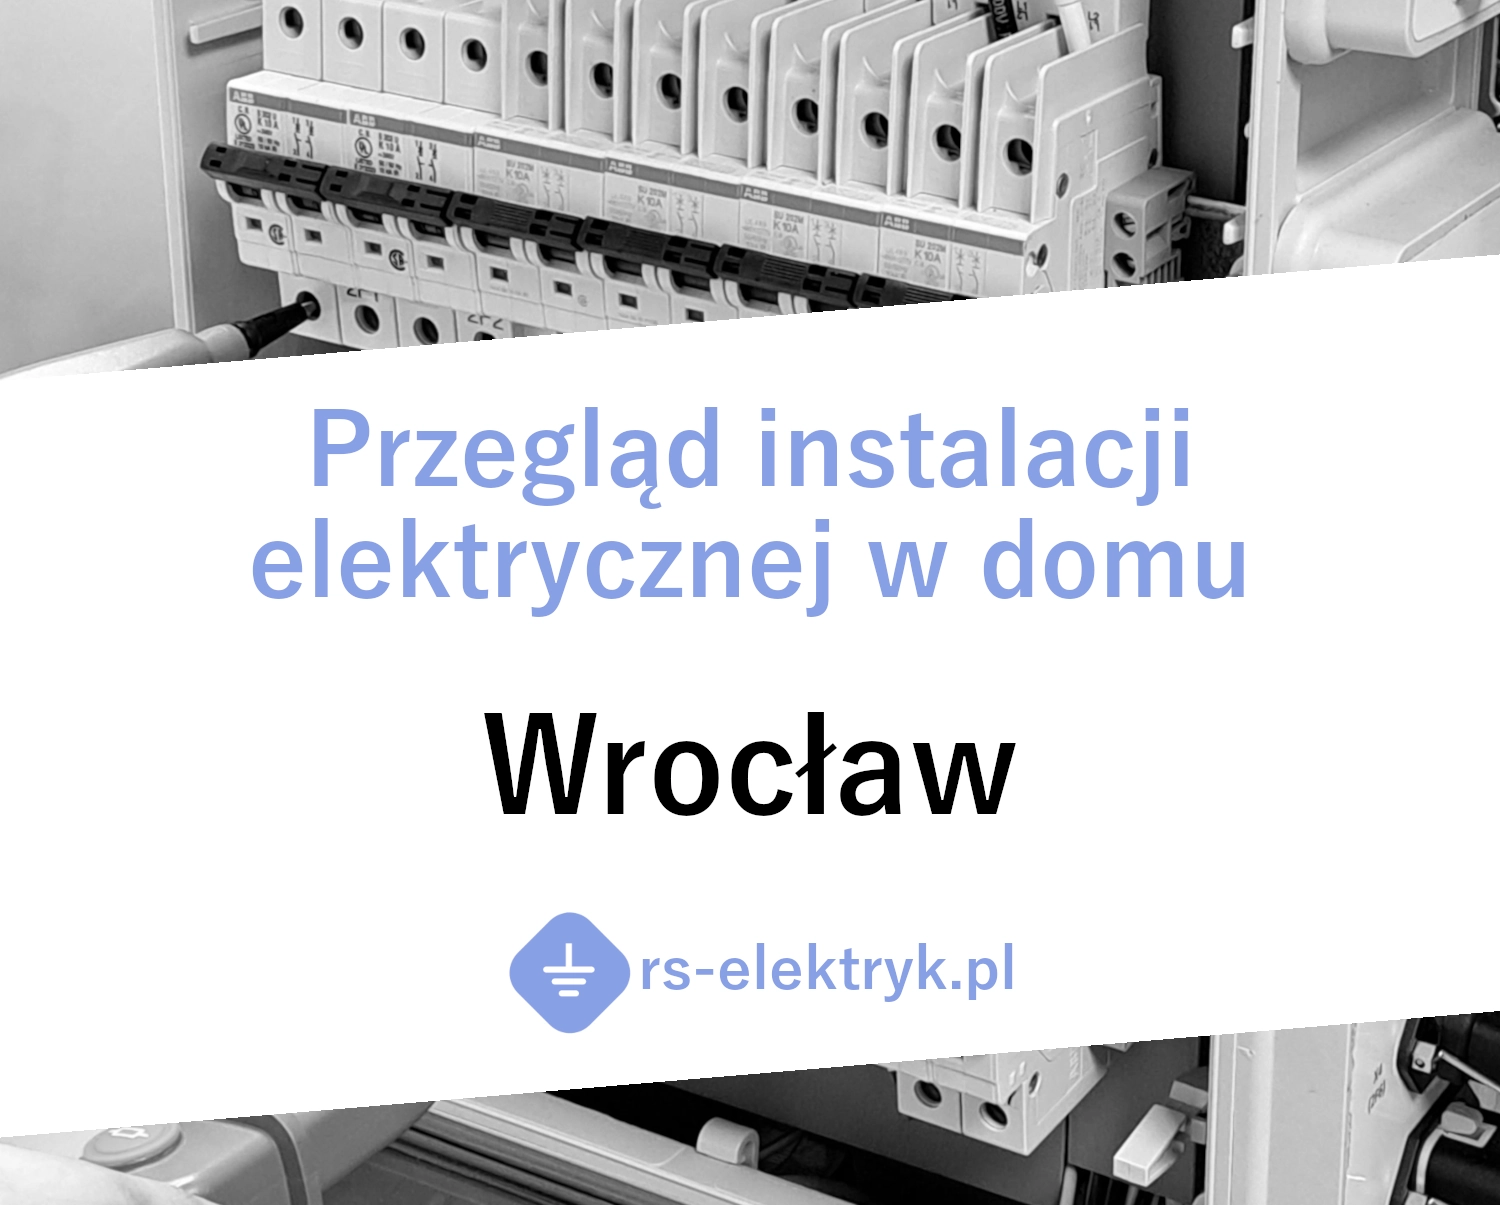 Przegląd instalacji elektrycznej w domu Wrocław